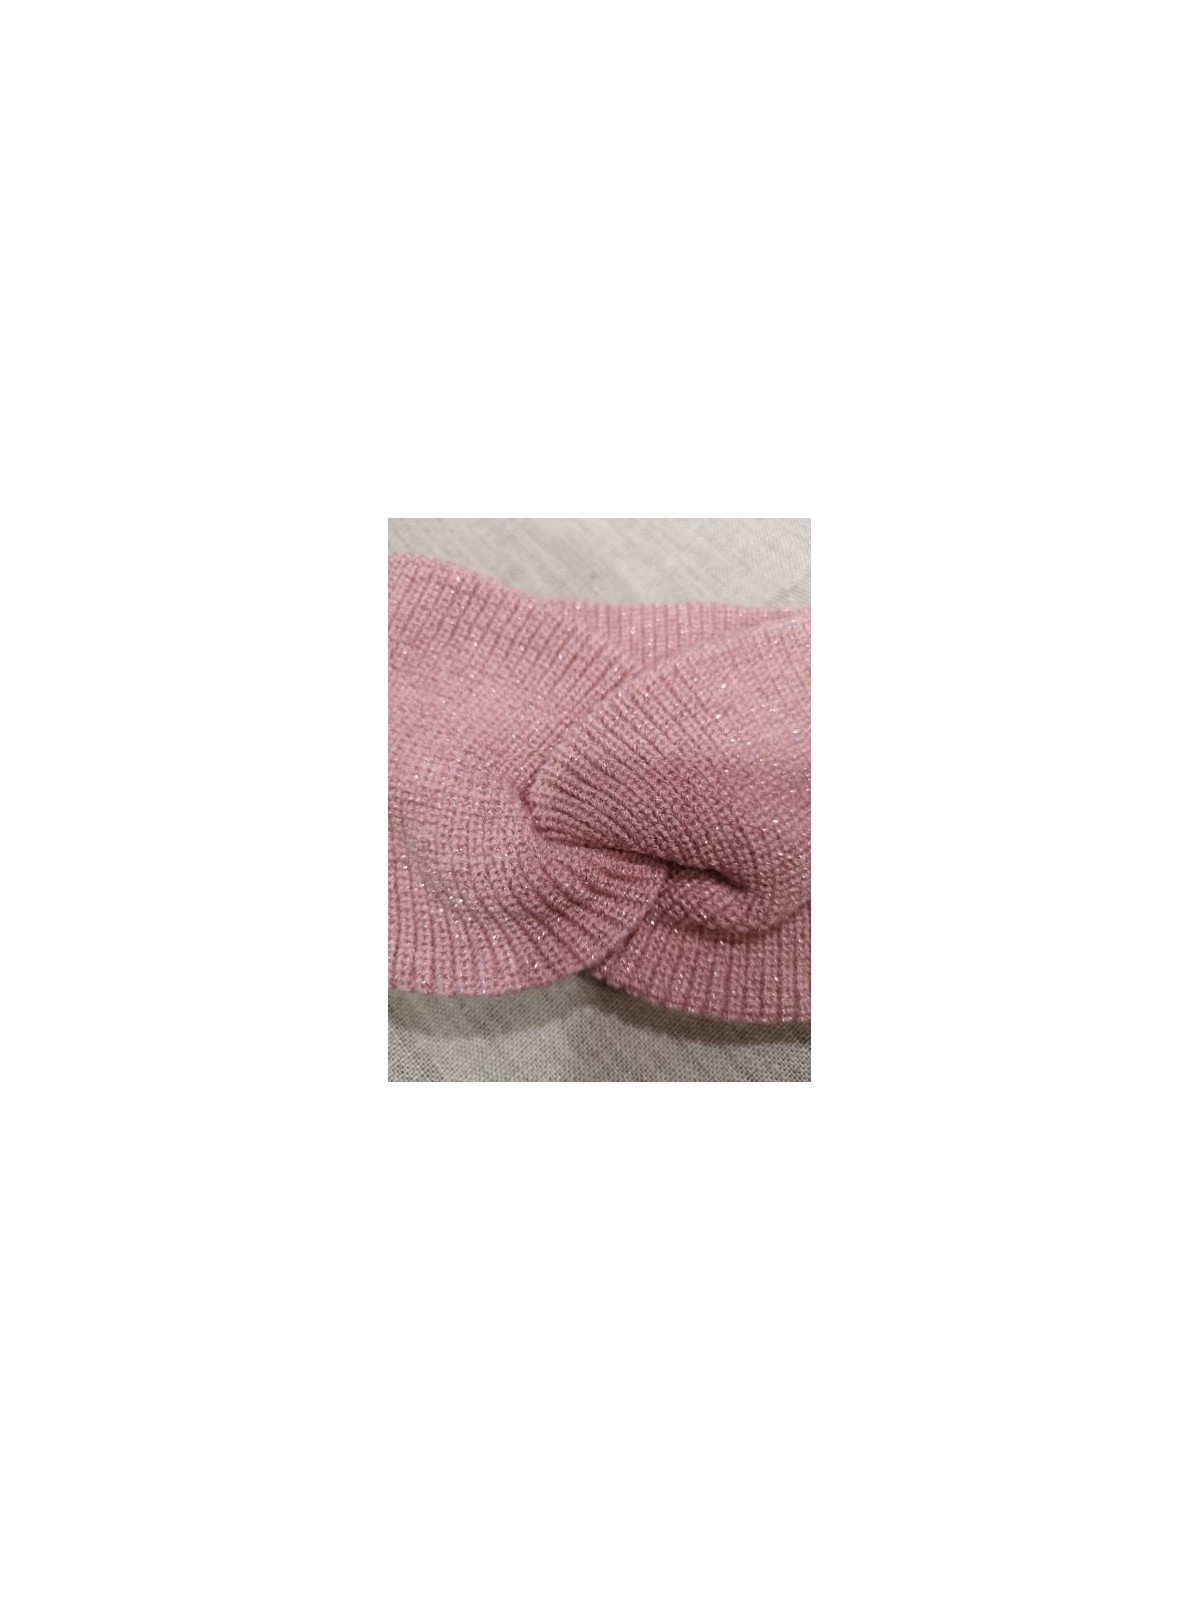 Headband rose avec noeud torsadé l 2 vue rapprochée l Tilleulmenthe mode boutique de vêtements femme en ligne